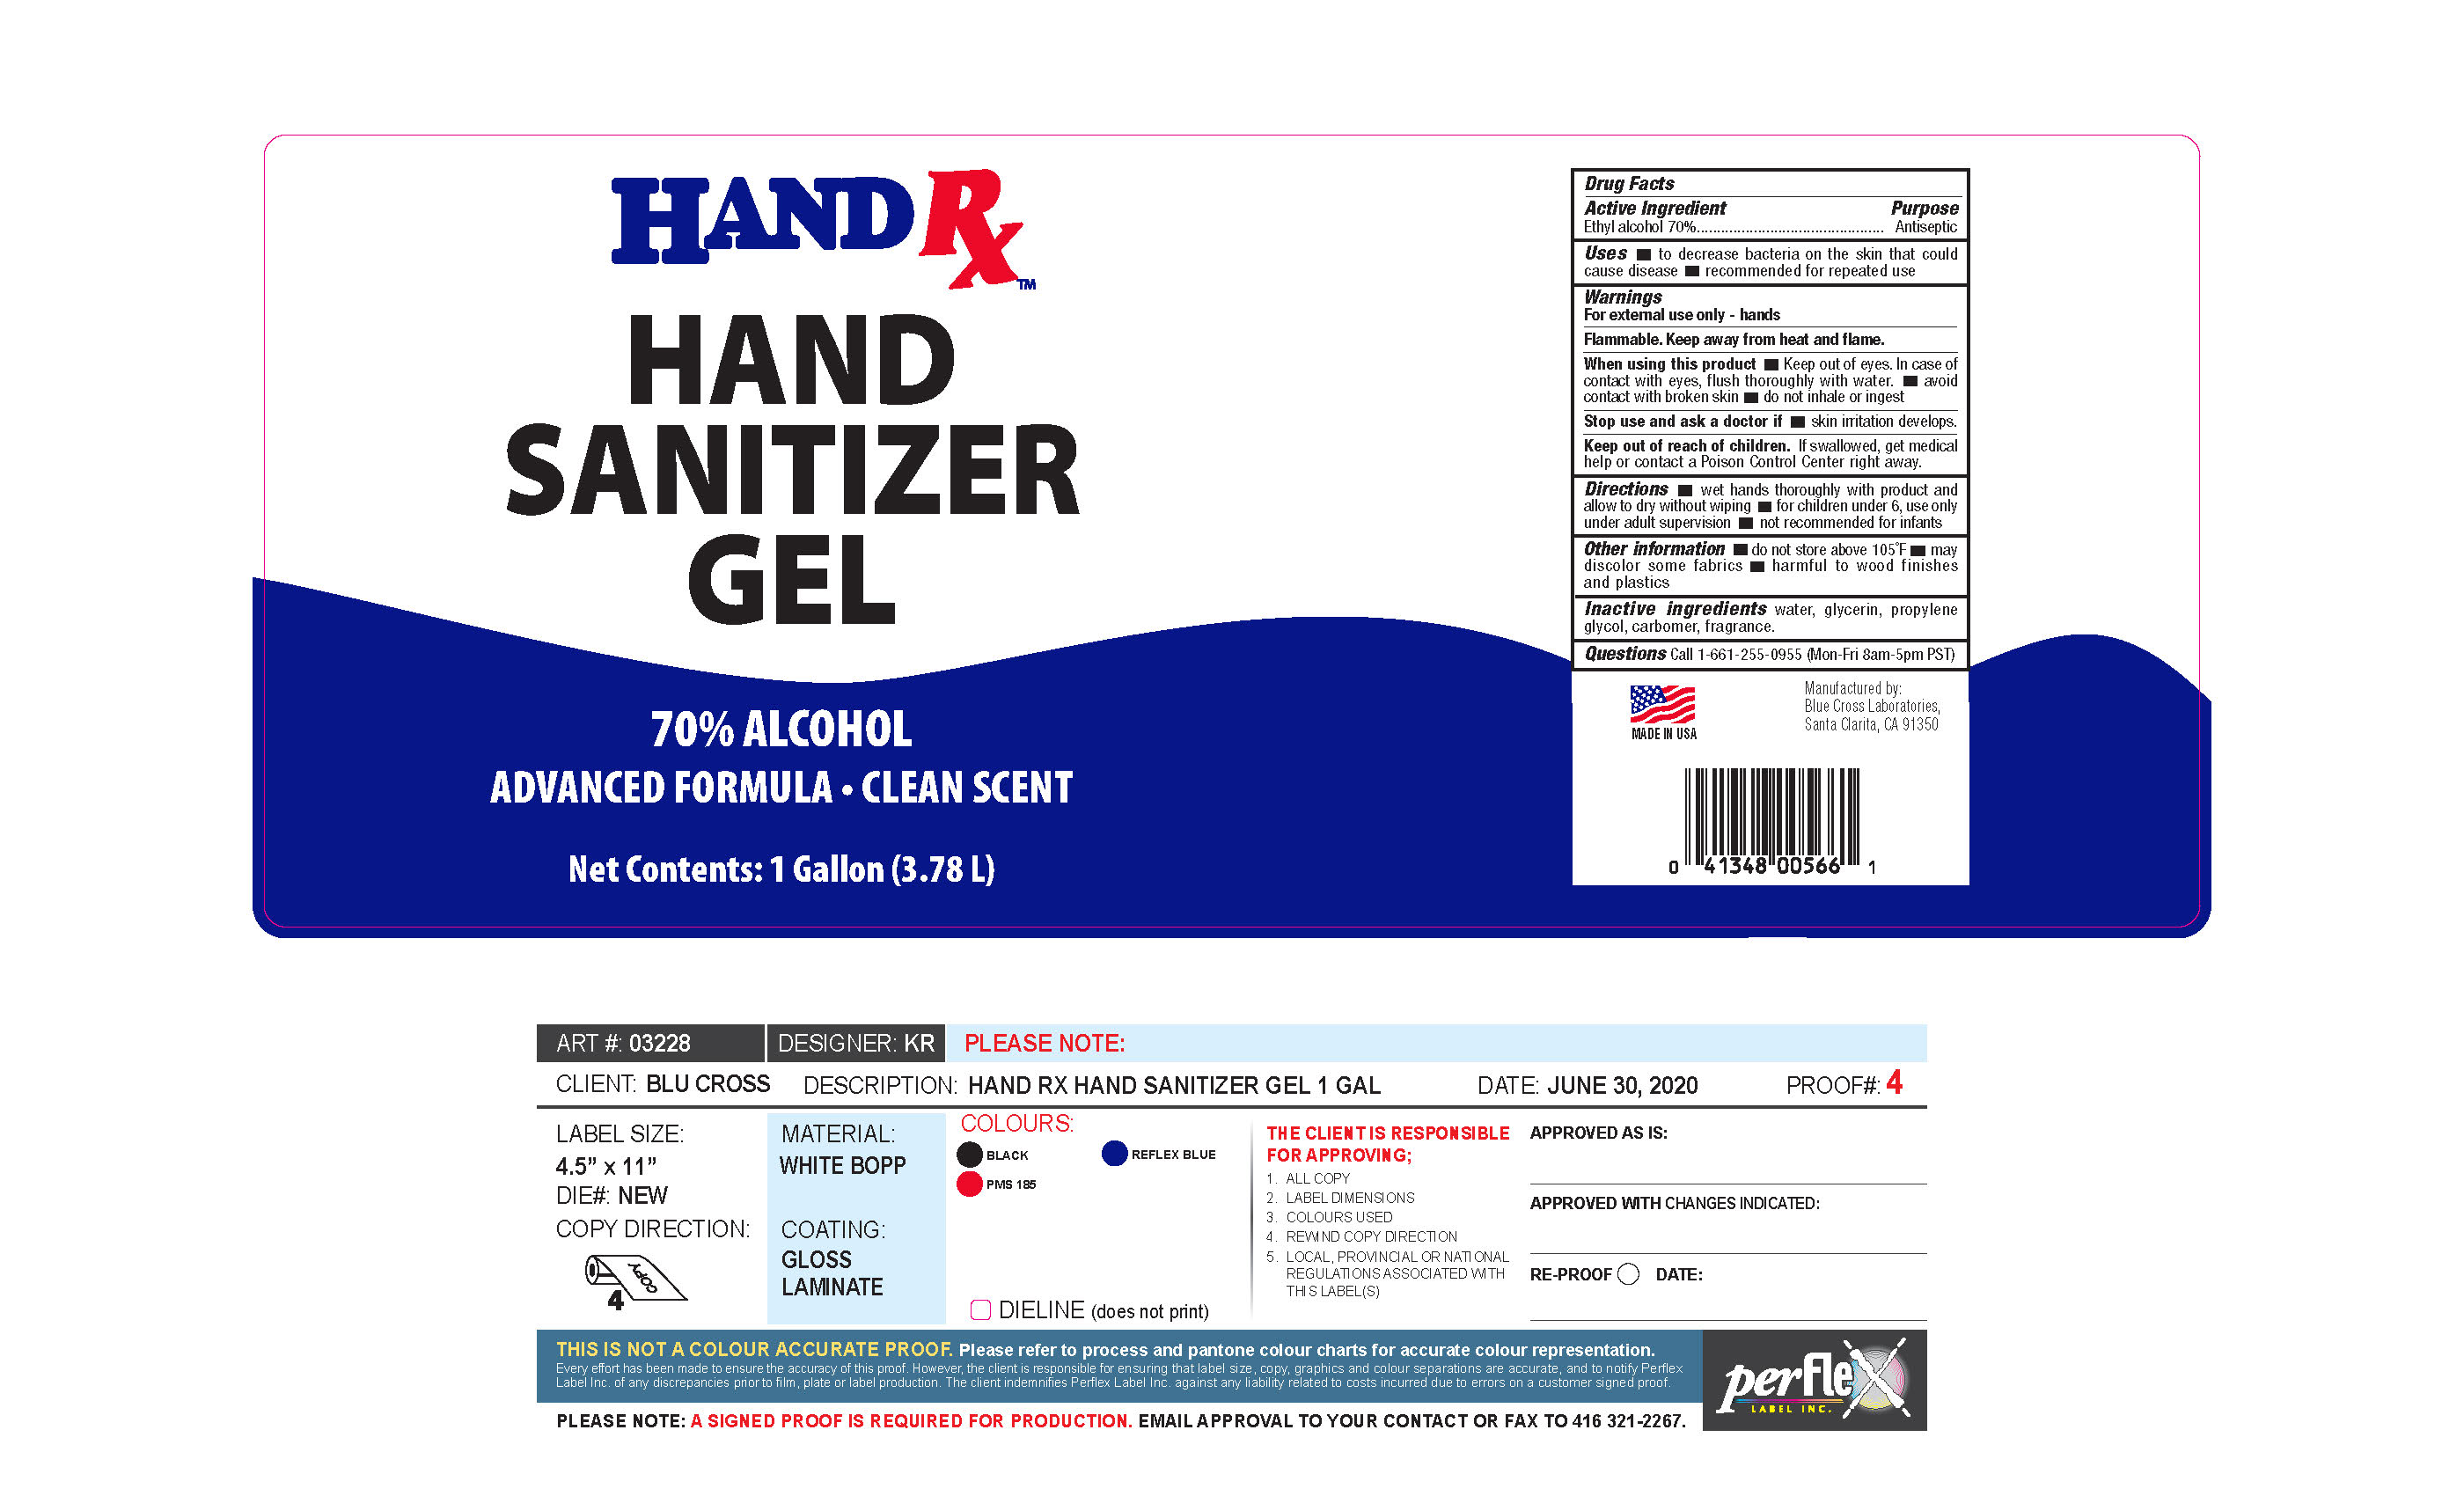 Hand Rx hand sanitize gel